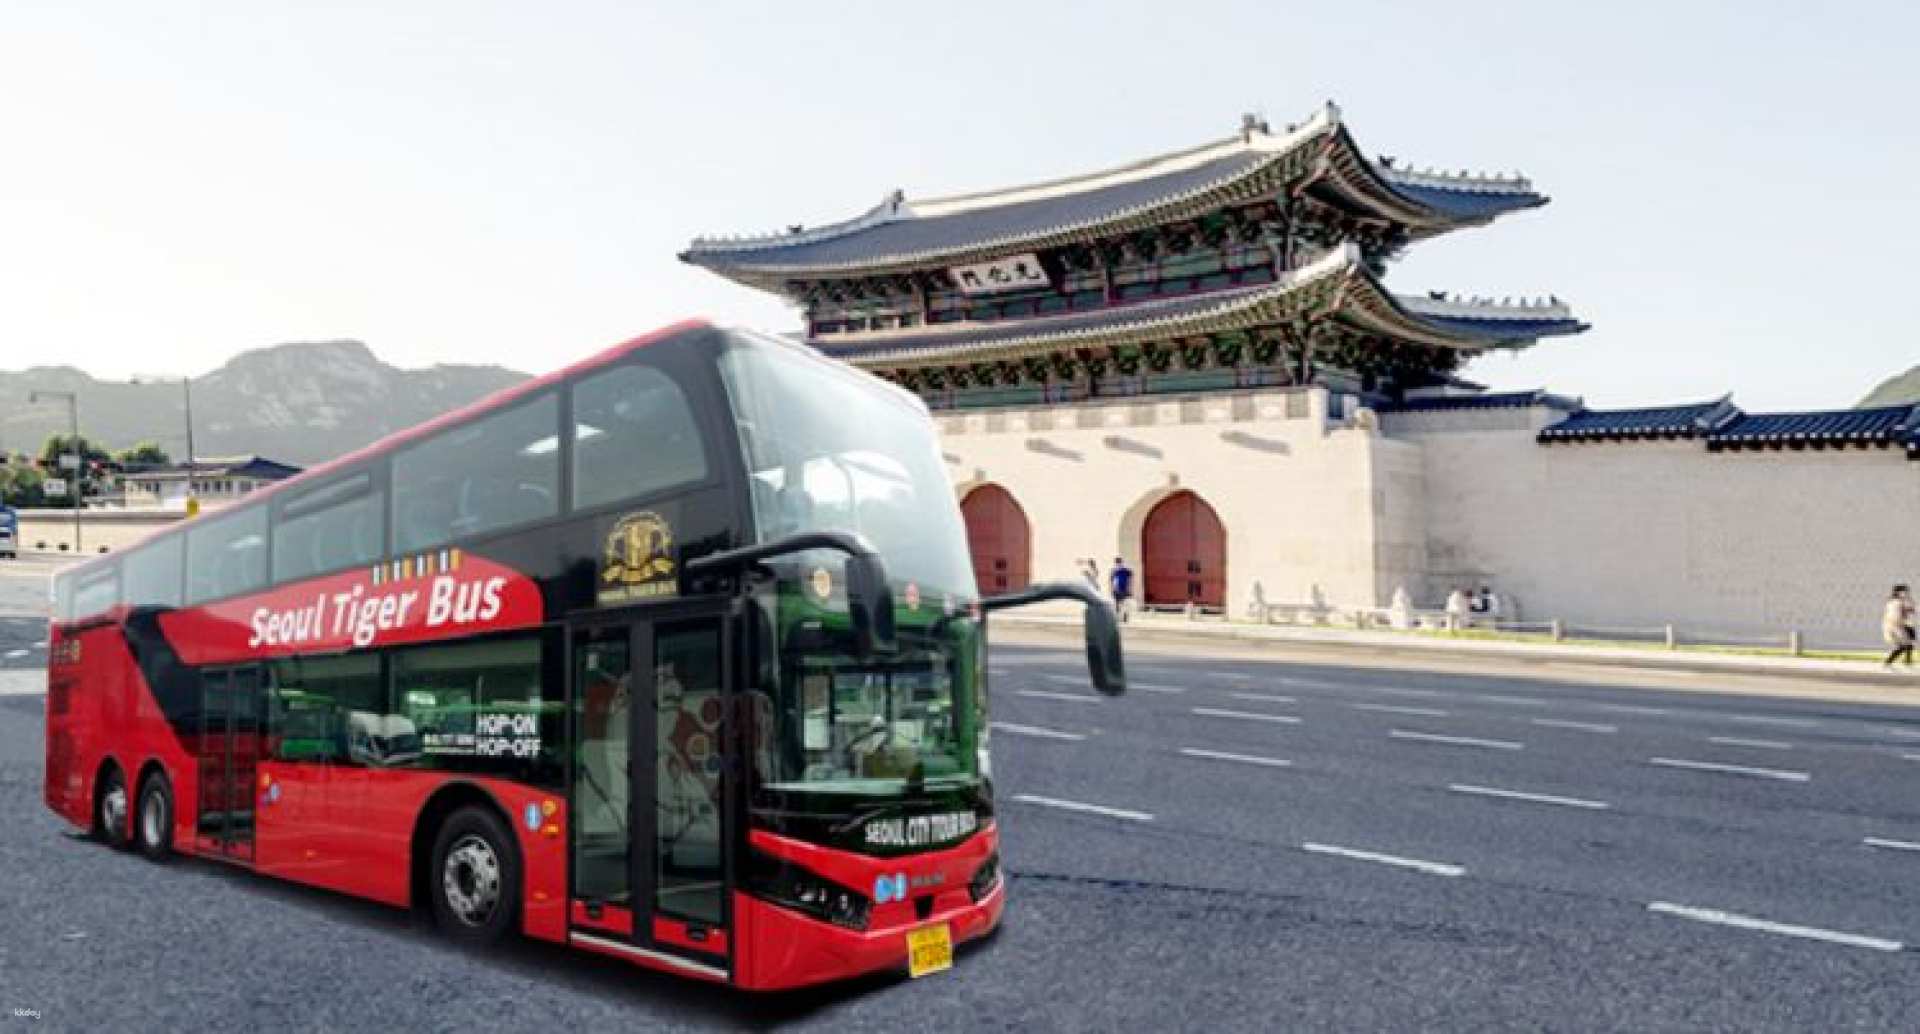 韓國-首爾交通票| 光化門城市觀光巴士-市區故宮南山路線搭乘券